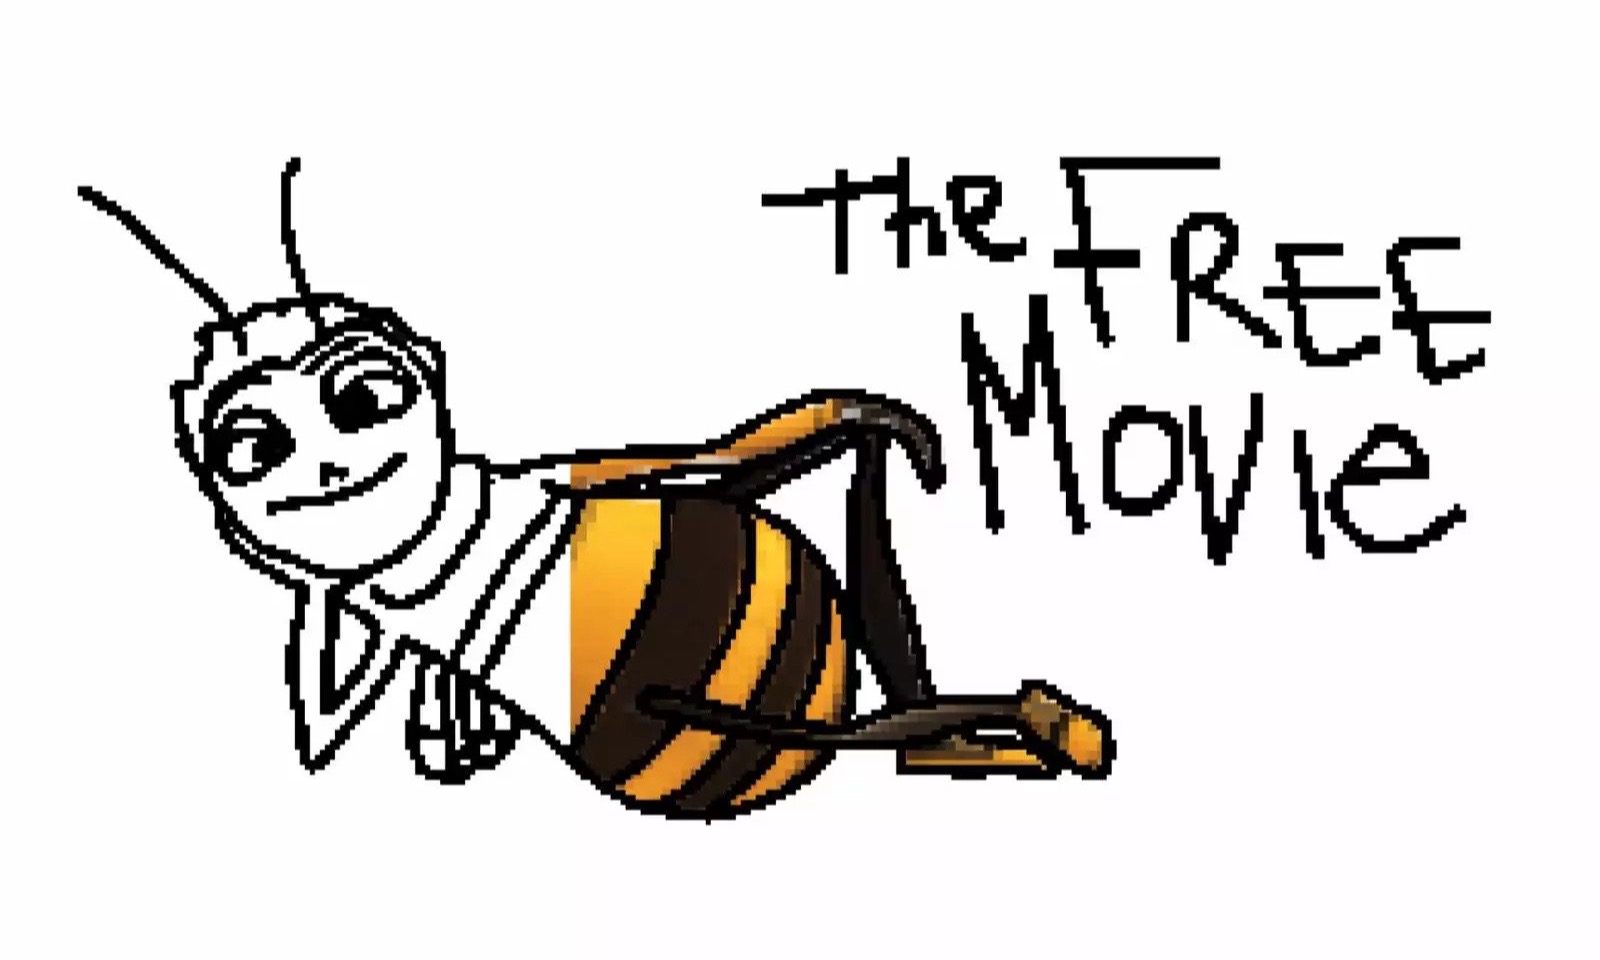 MSCHF 邀请大家一起逐帧制作「盗版」《蜜蜂总动员》电影